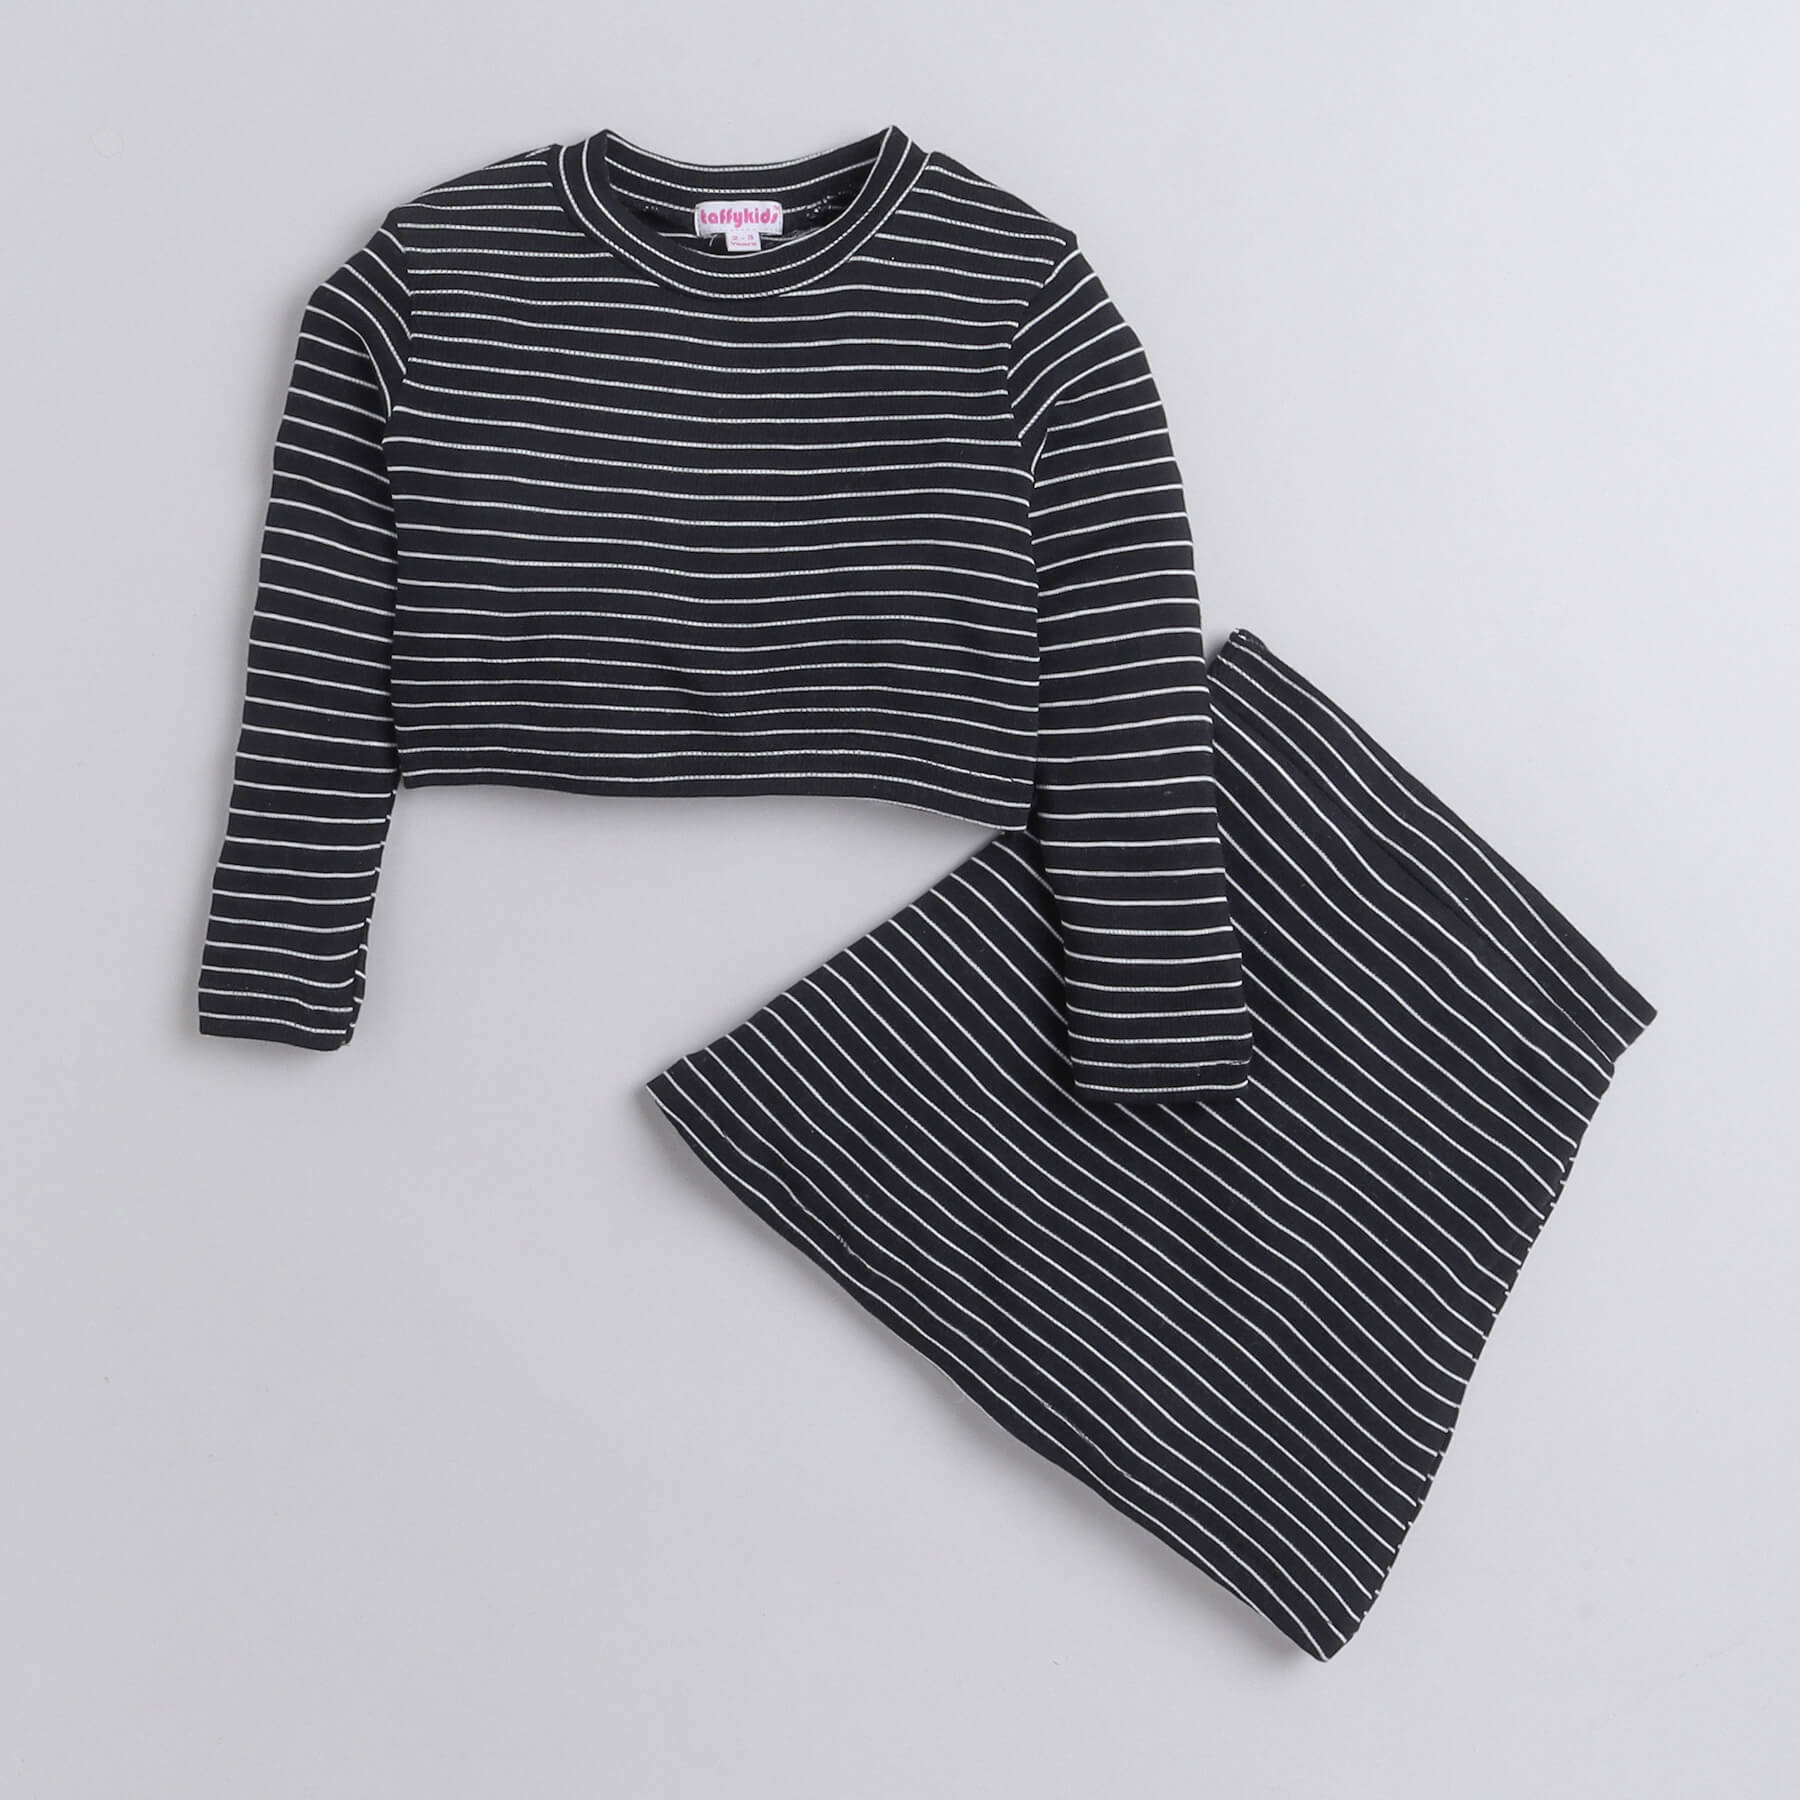 Girls Black White Stripes Full Sleeve Crop Top and Short Skirt Set